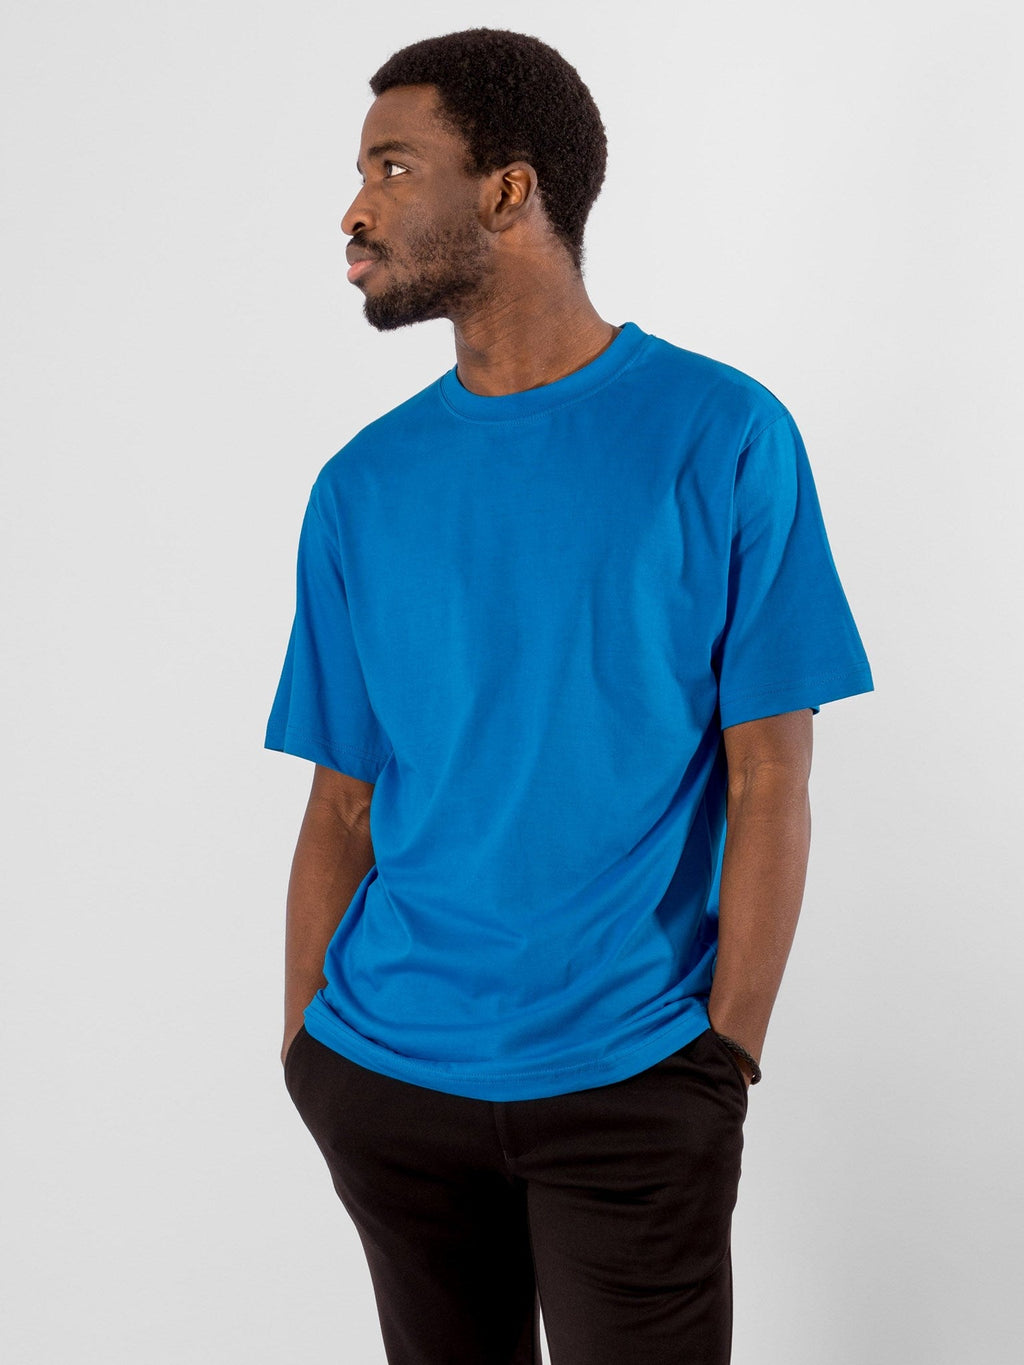 T-shirt surdimensionné - bleu turquoise